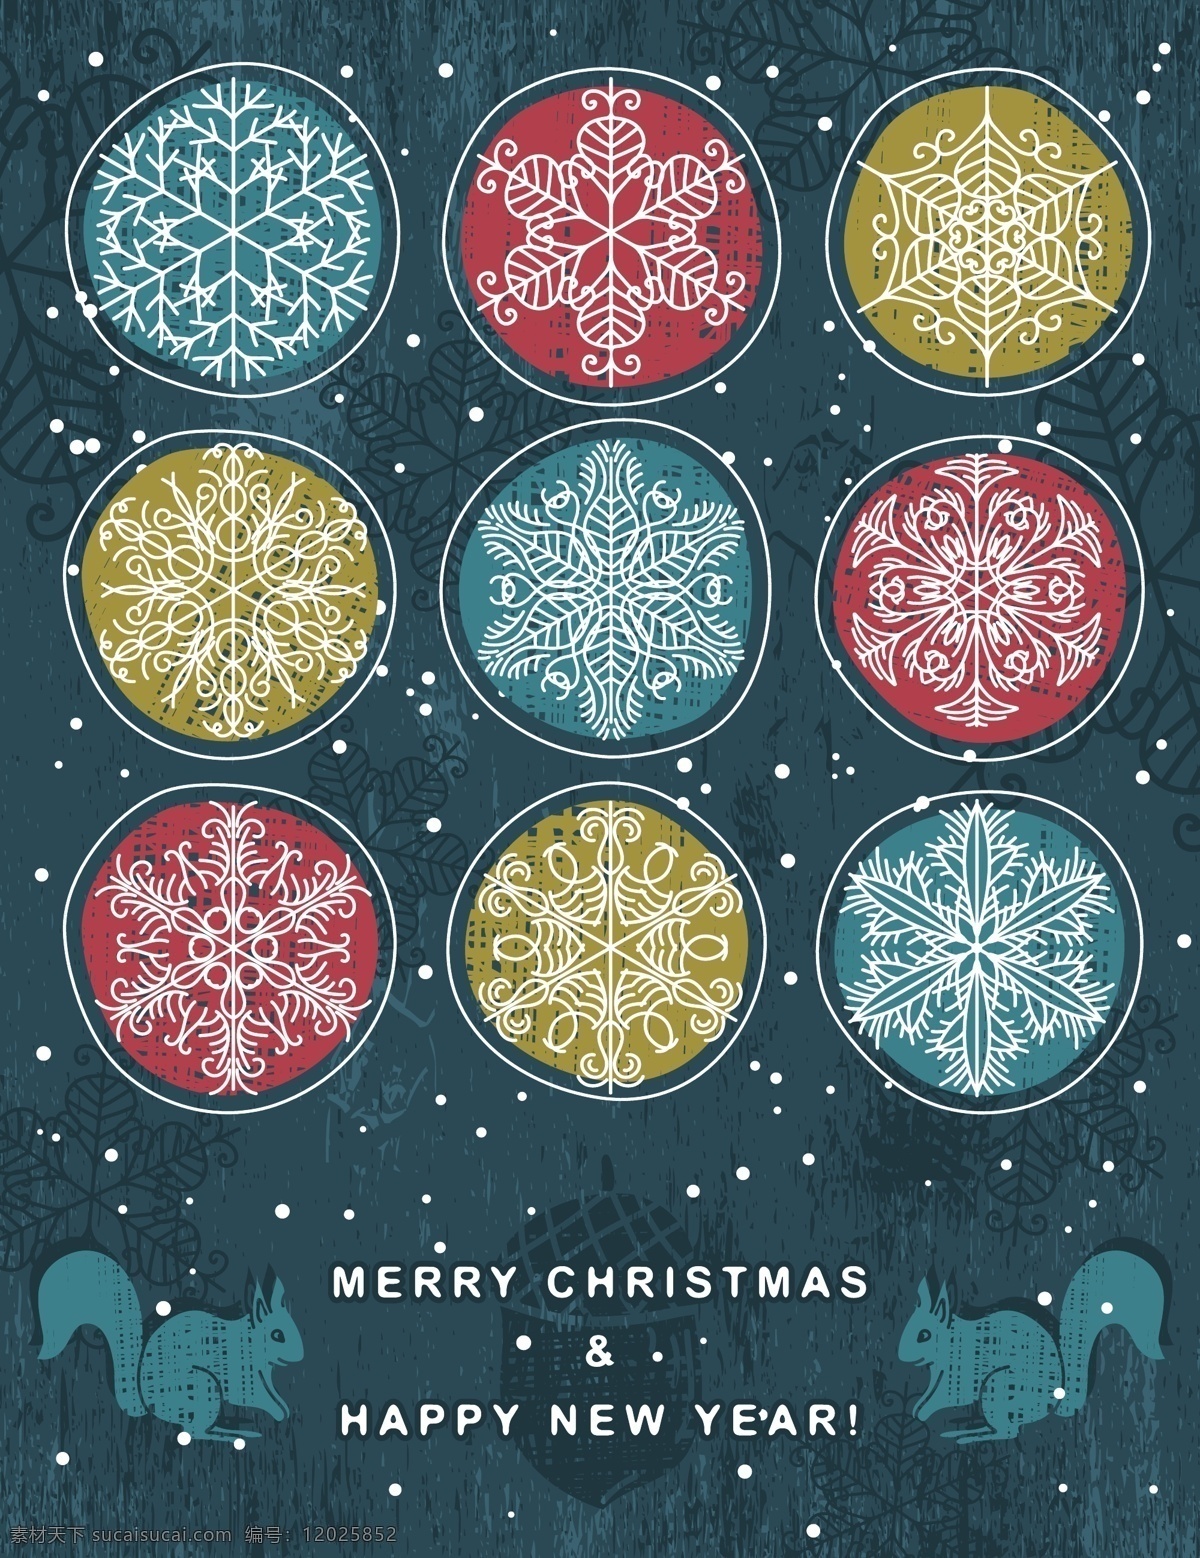 复古 圣诞节 矢量 圣诞节背景 圣诞节设计 松鼠 雪花纹样 手绘圣诞树 圣诞快乐横幅